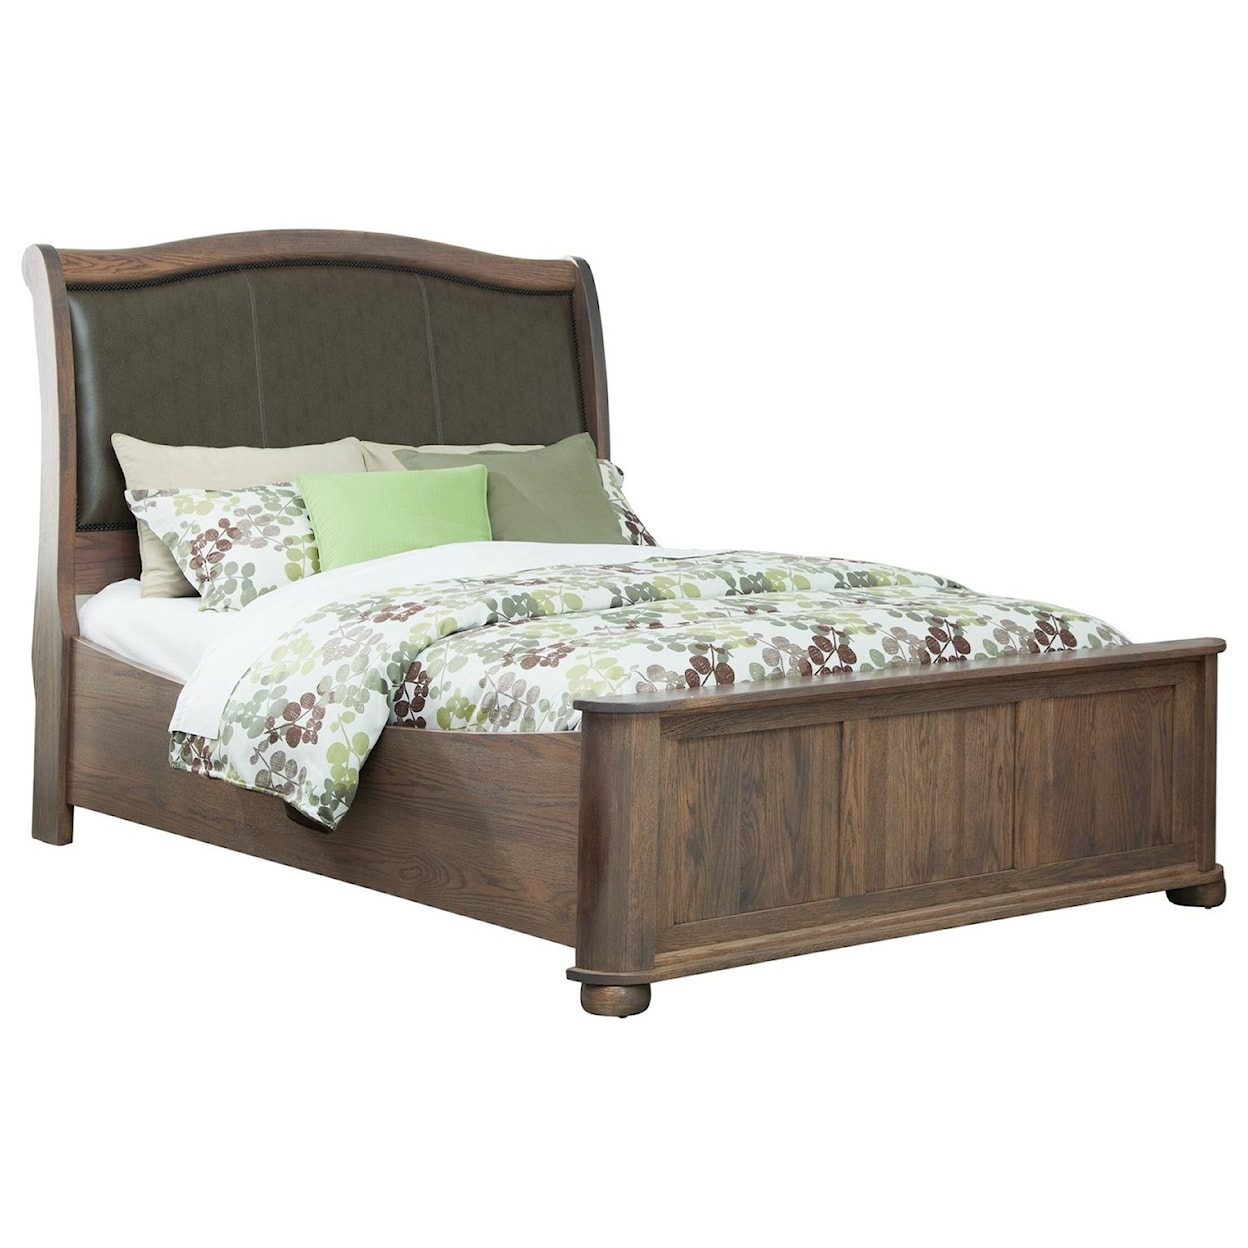 Mavin Kingsport Queen Upholstered Sleigh Bed